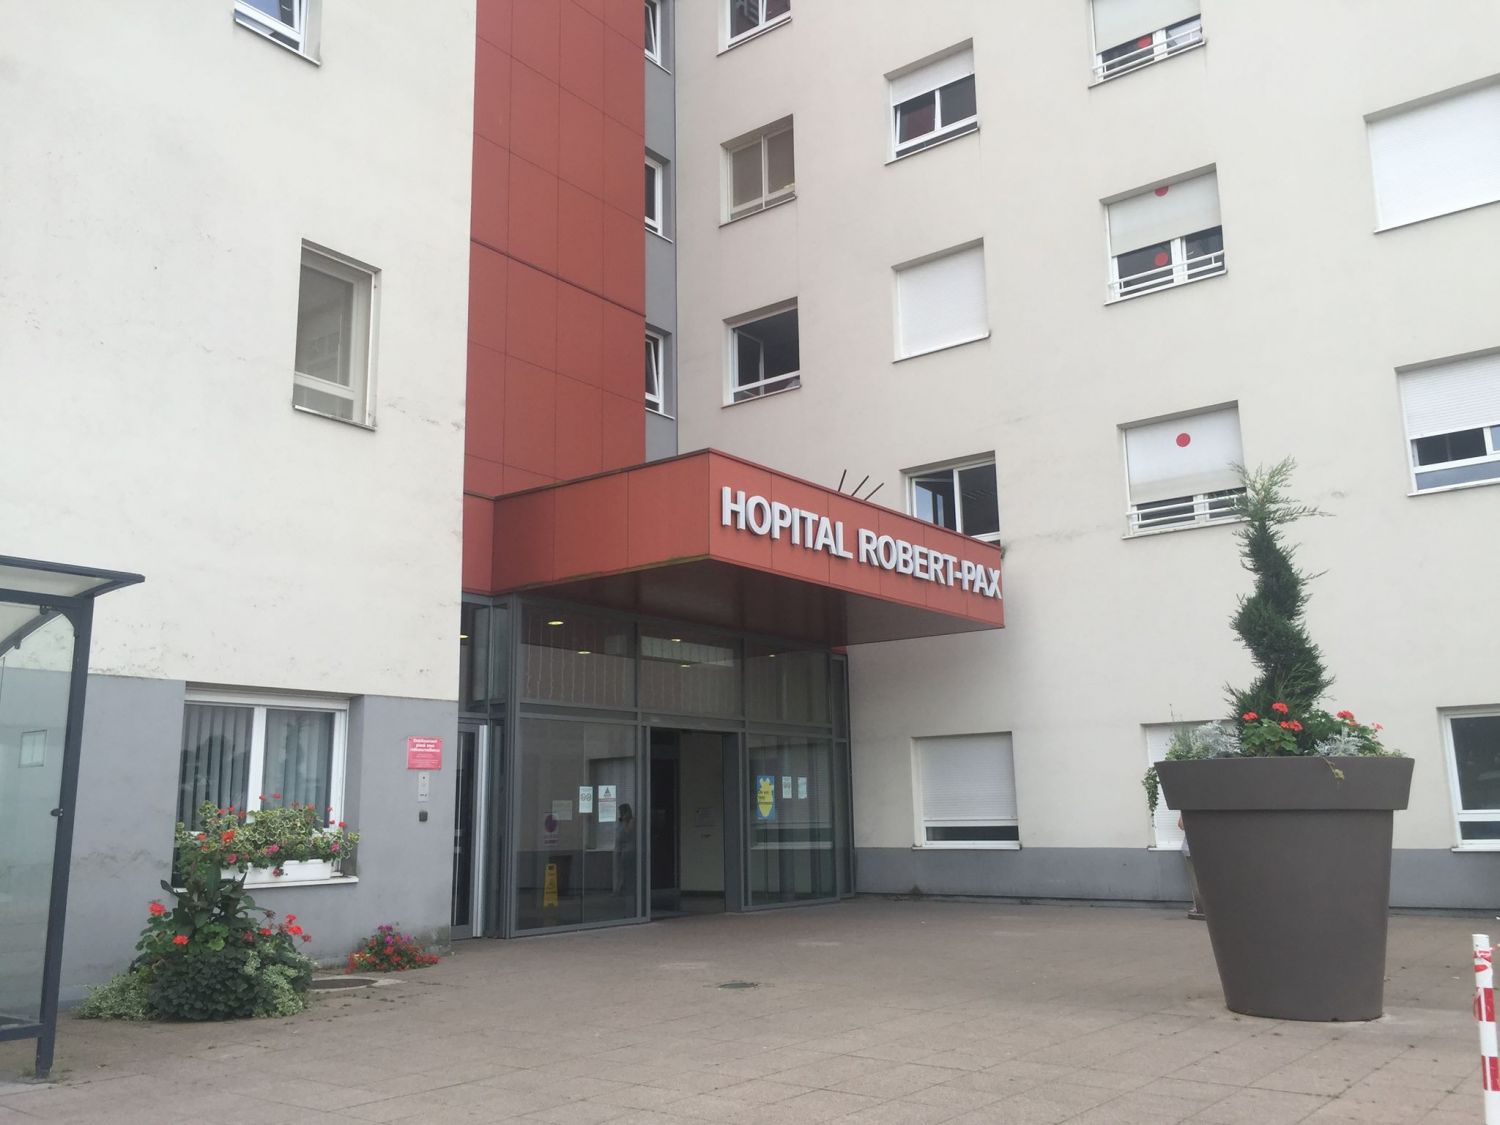 Hôpital de Sarreguemines : des lits sont fermés, le dispositif ''hôpital en tension'' déclenché